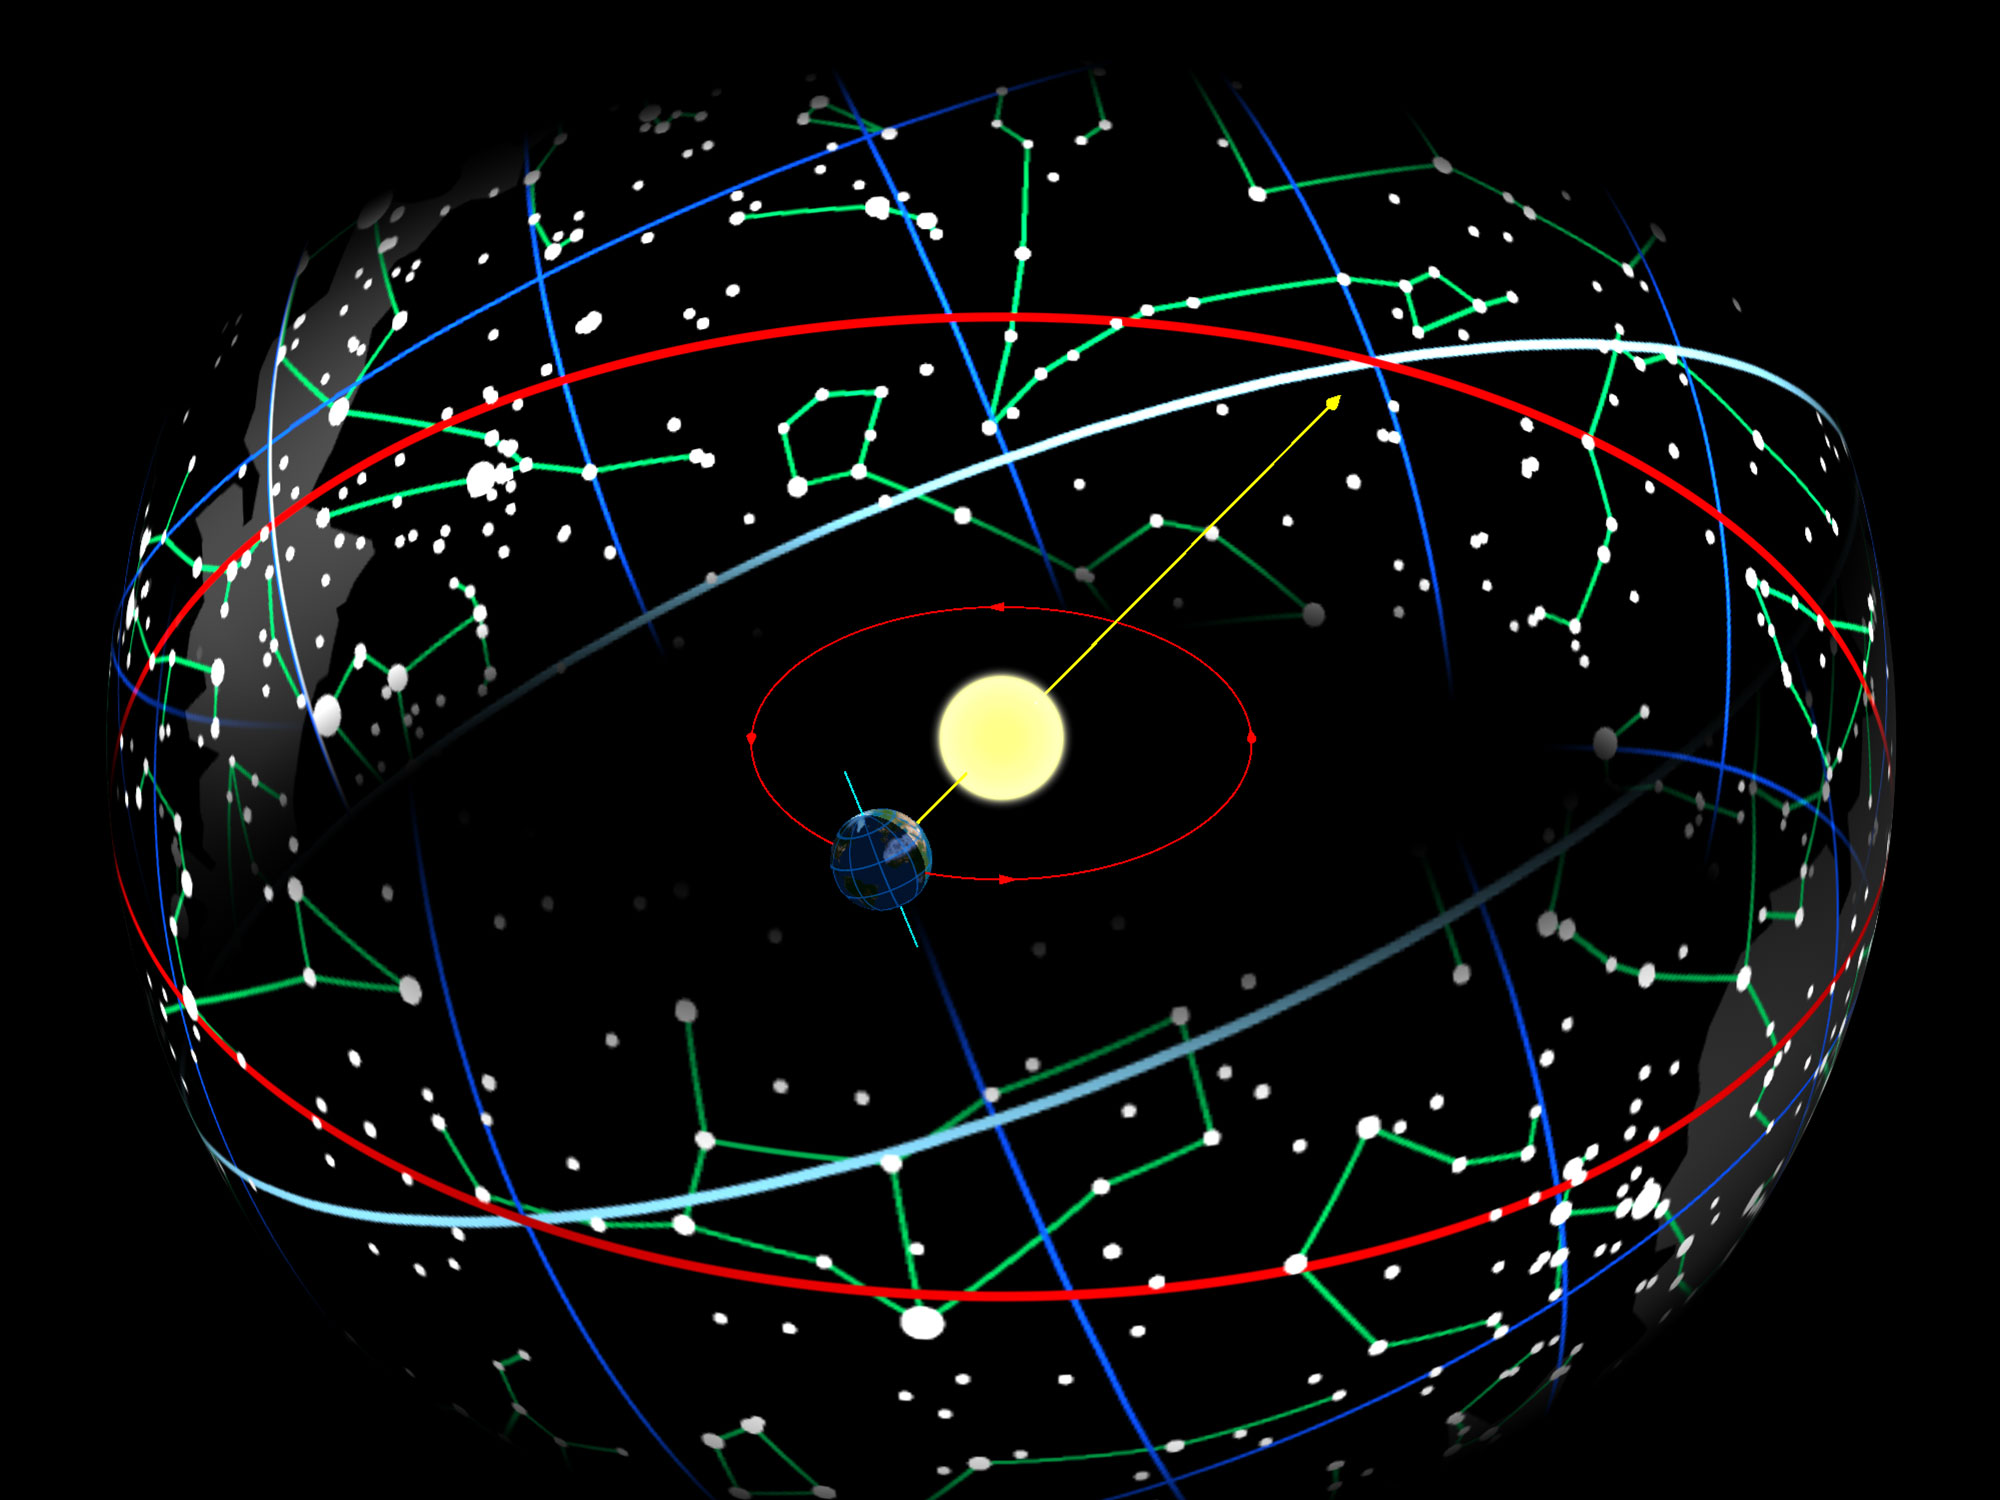 Zem v jej obežnej dráhe okolo Slnka spôsobí, že Slnko sa objaví na nebeskej sfére pohybujúcej sa pozdĺž ekliptiky (červený kruh), ktorý je naklonený 23.44 ° vzhľadom na nebeský rovník (modro-biely).